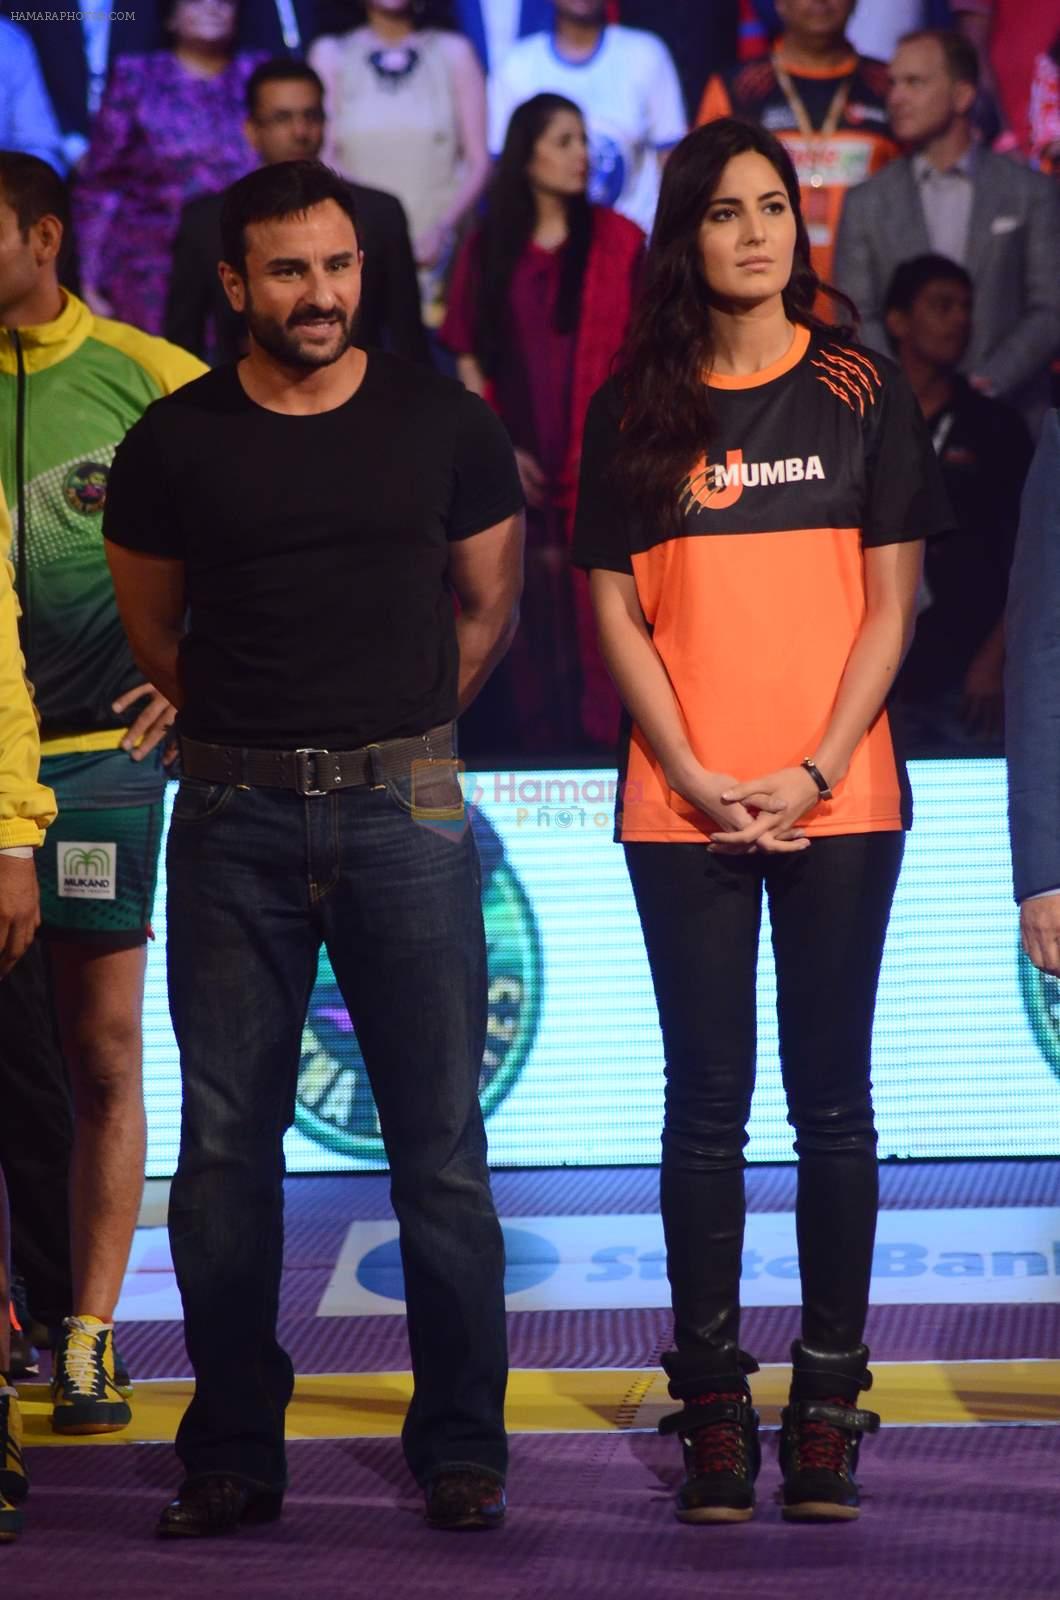 Katrina Kaif, Saif Ali Khan at Pro Kabaddi finals in NSCI on 23rd Aug 2015